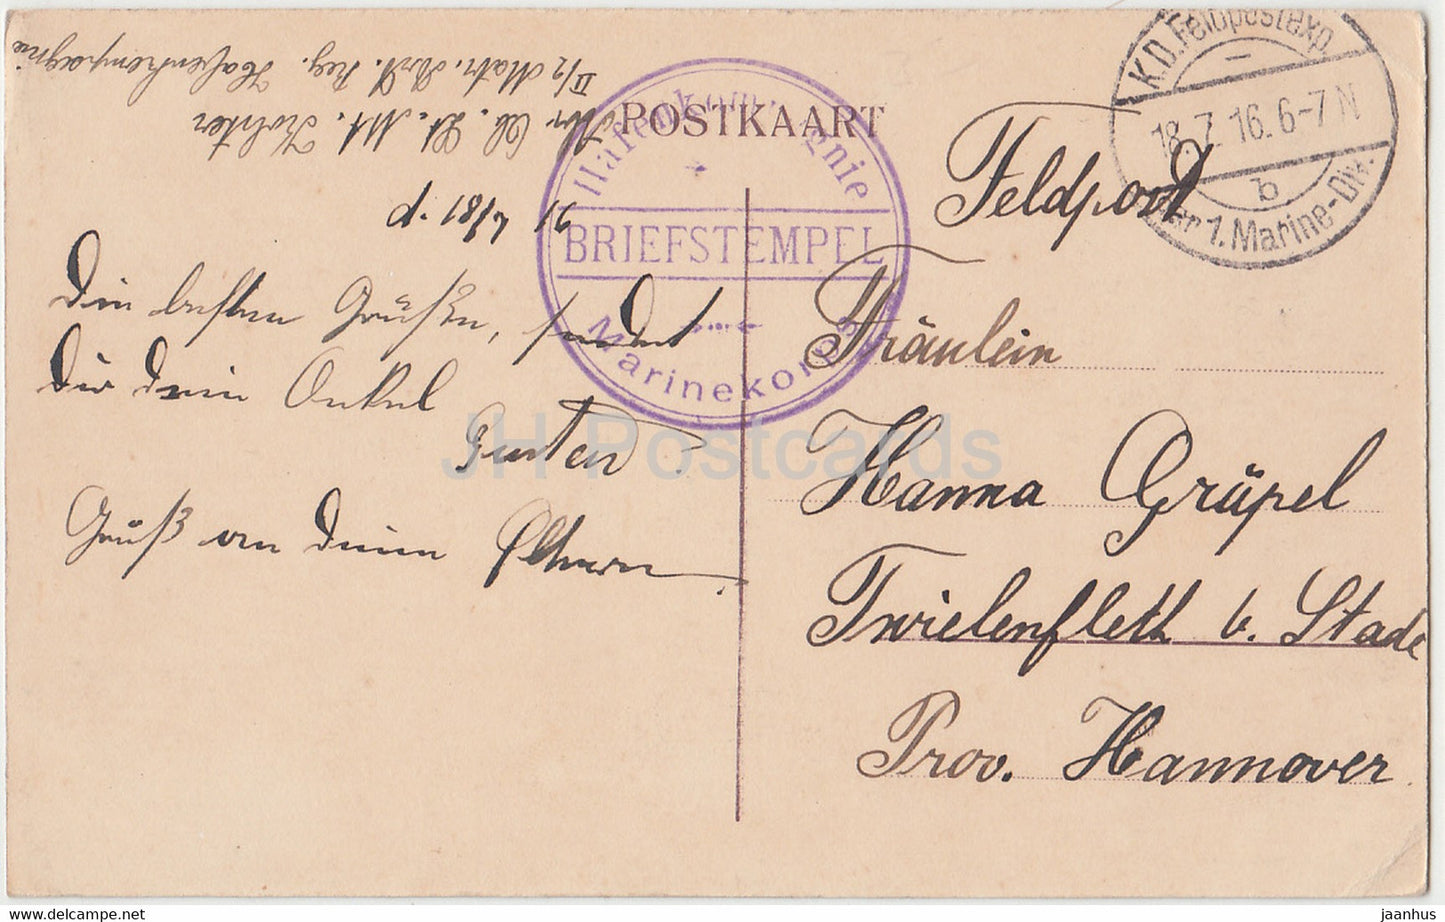 Oostende - De Kursaal in de richting der Stad en Leopoldlaan - Feldpost - alte Postkarte - 1916 - Belgien - gebraucht